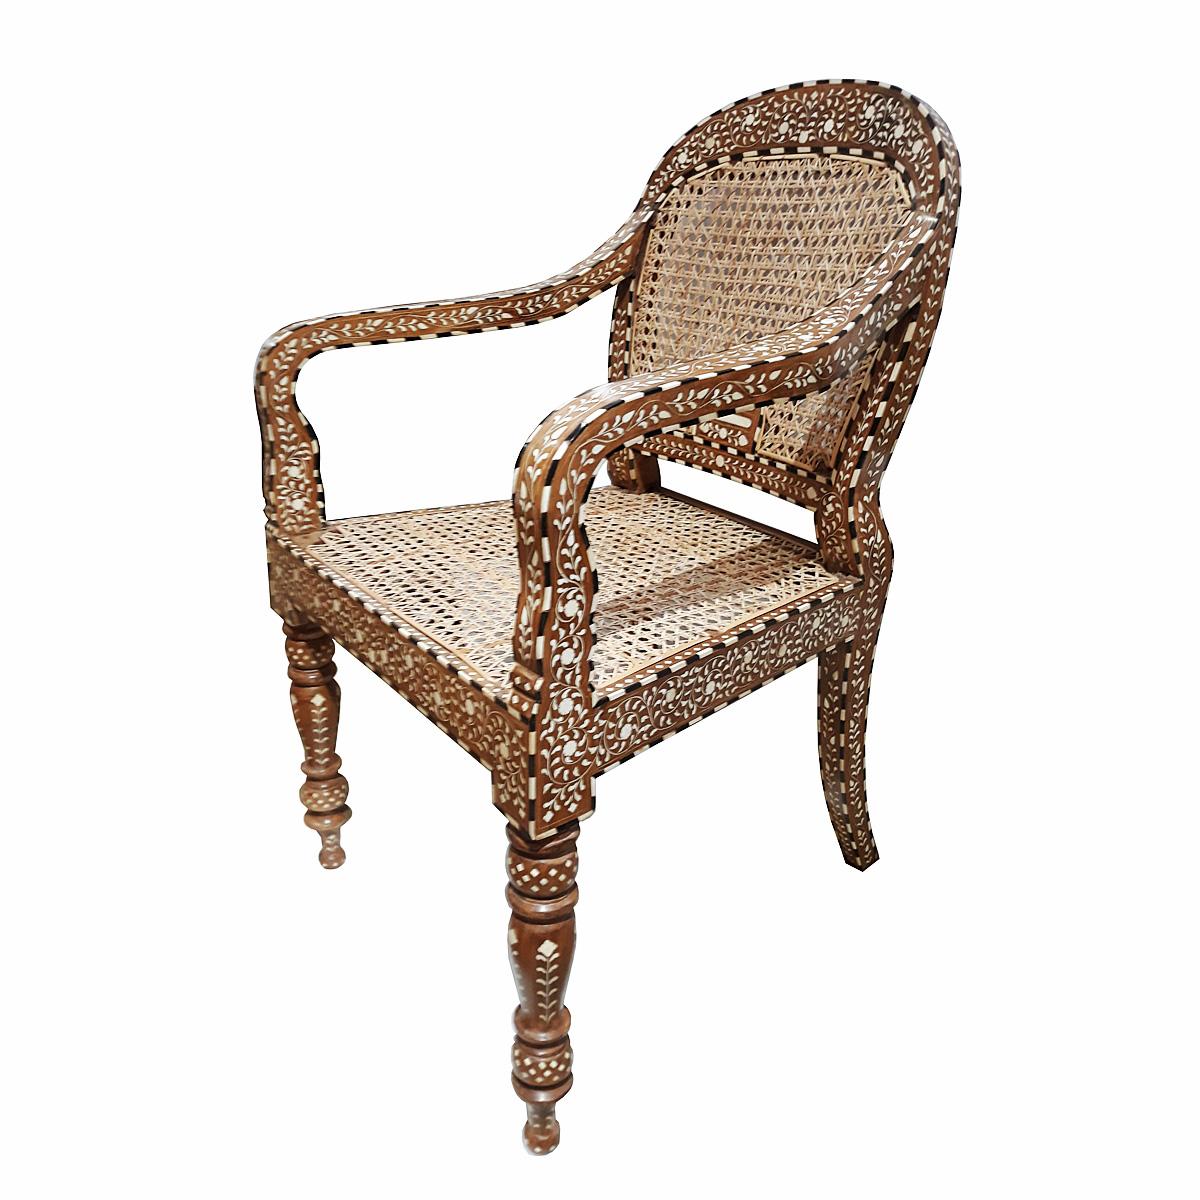 Ein wunderschöner Sessel, handgefertigt in Indien aus gealtertem und natürlich abgelagertem Teakholz, mit Einlegearbeiten aus tierversuchsfrei gewonnenem Knochen und handwerklich geflochtenem Schilfrohr. 

Einlegearbeiten sind eine uralte dekorative